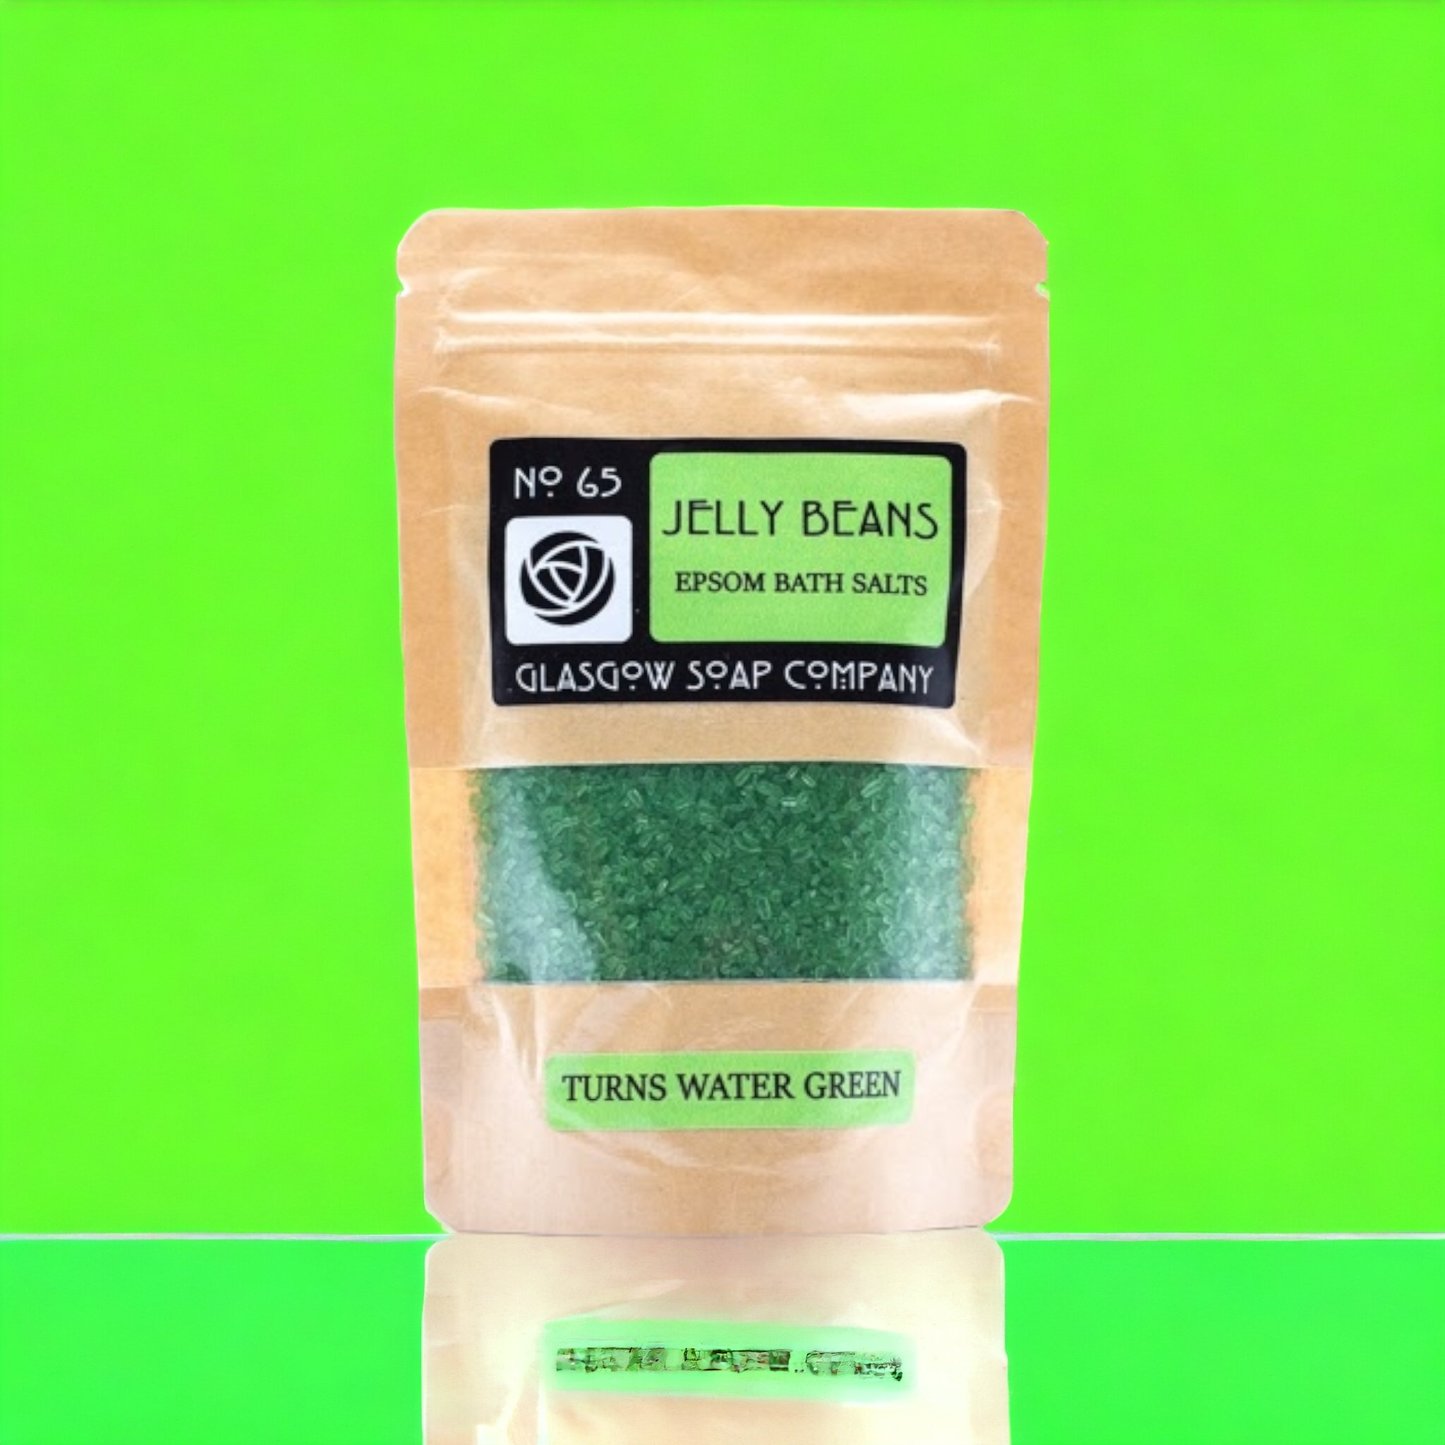 Jelly Beans Epsom Bath Salts